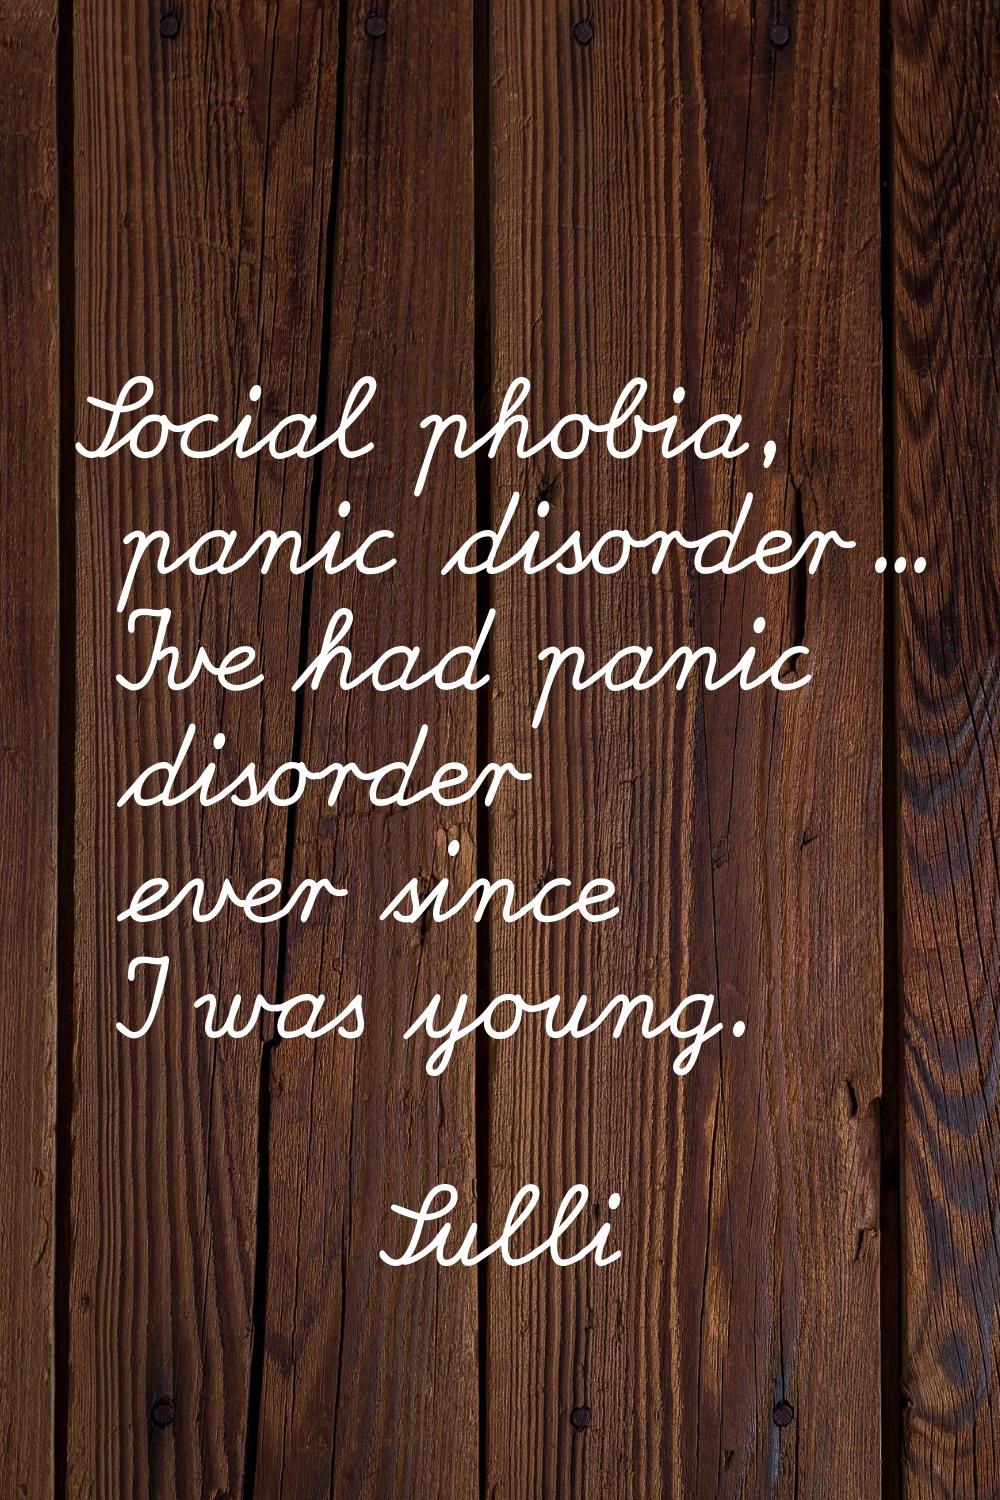 Social phobia, panic disorder… I've had panic disorder ever since I was young.